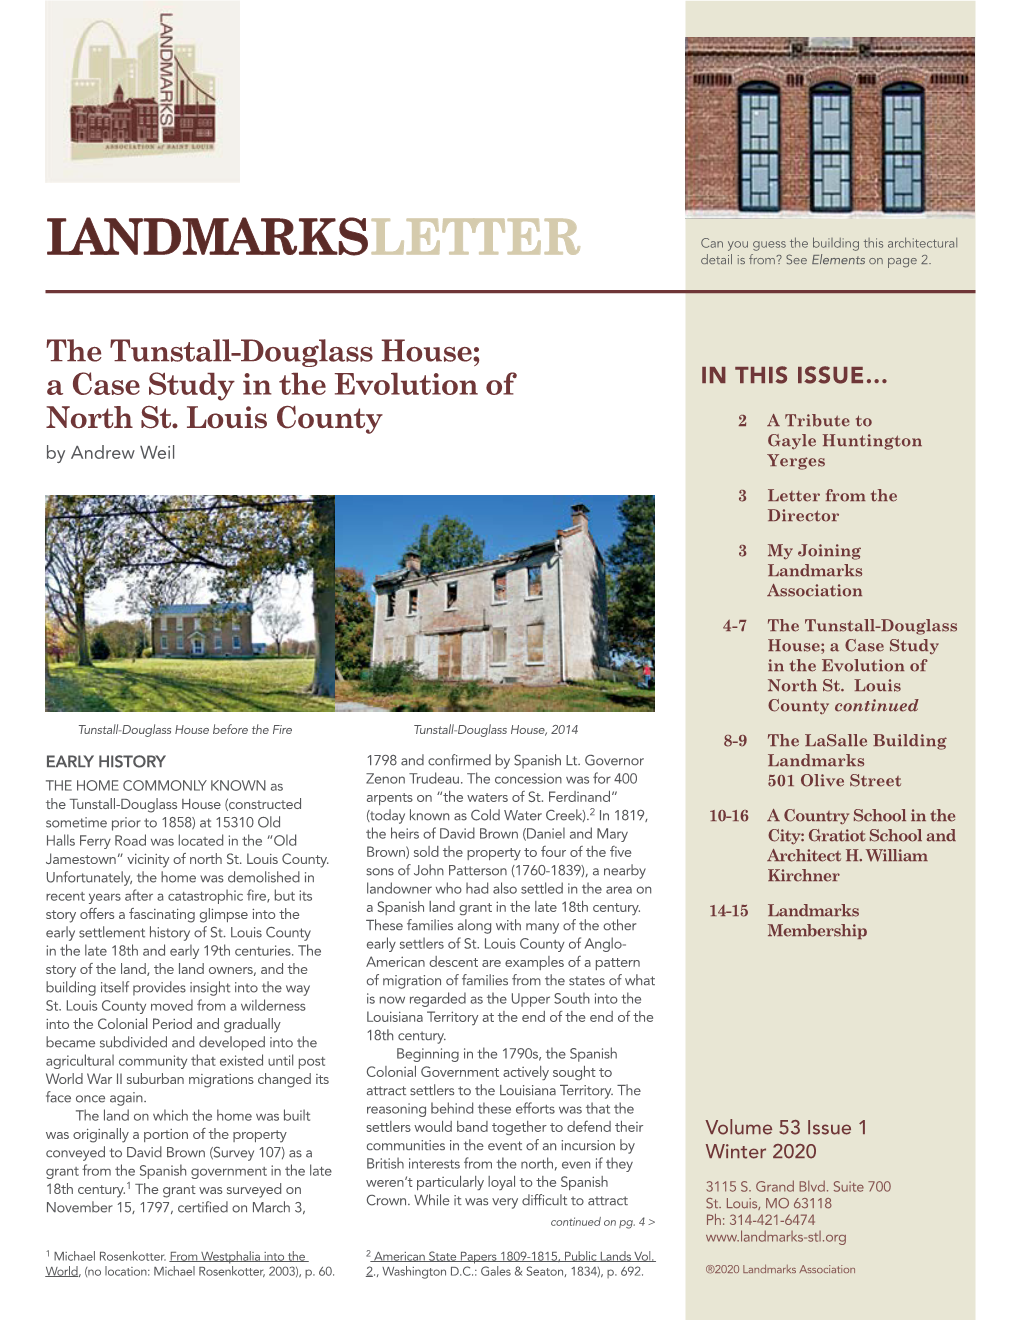 Landmarks Letter, Vol 53 # 1 Winter 2020